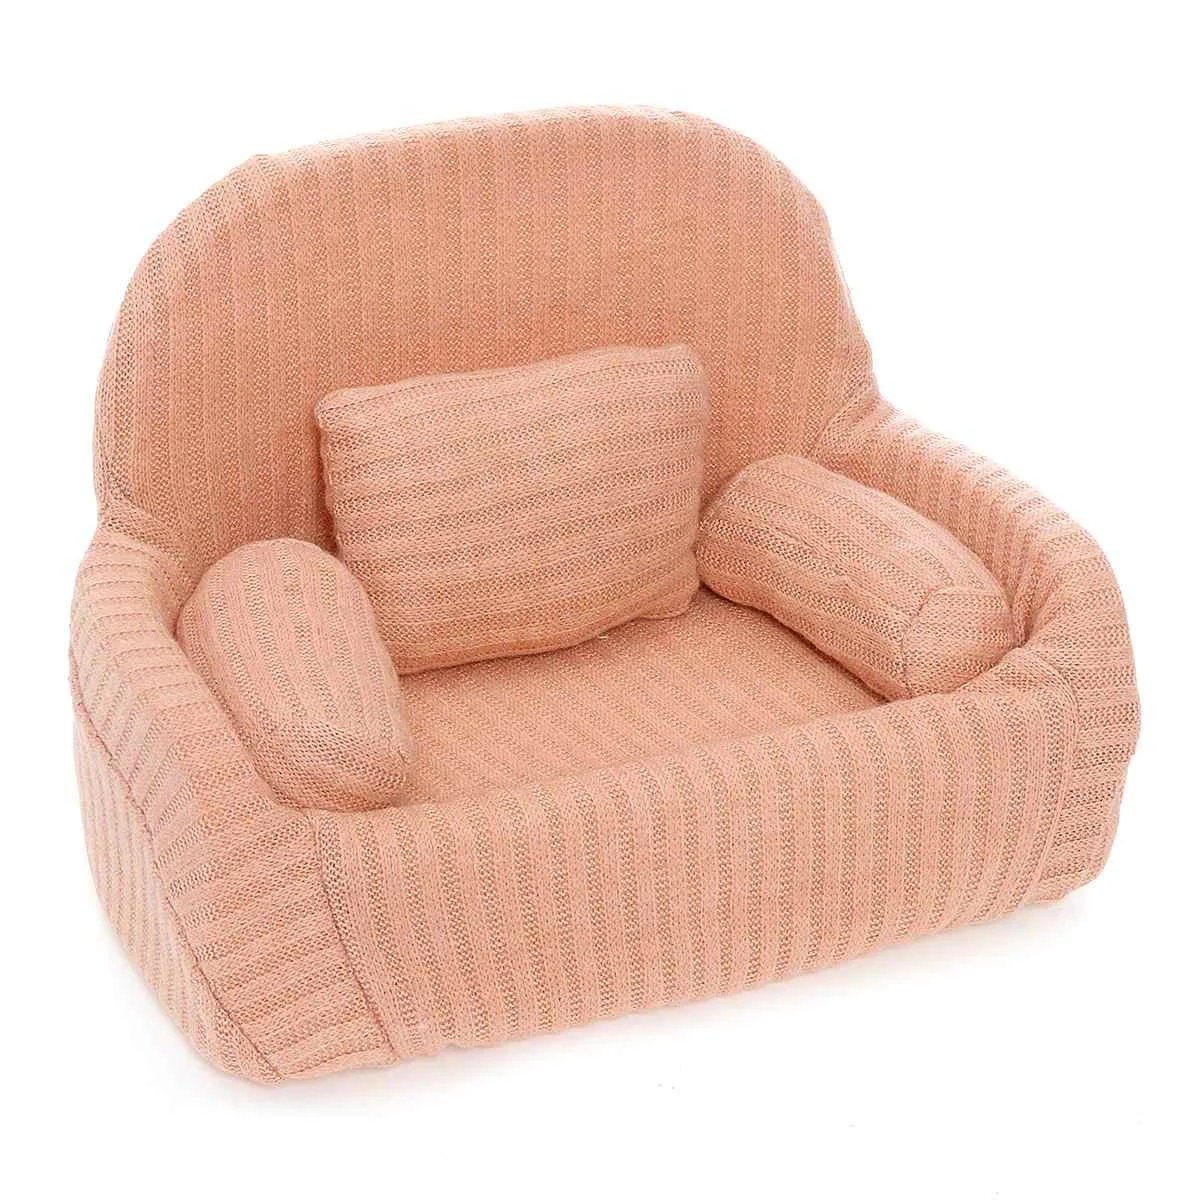 Реквизит для фотосъемки новорожденных, набор мини-подушек для дивана, украшения стула, аксессуары для детской фотосъемки, студийный реквизит для фотосъемки младенцев - Цвет: Оранжевый